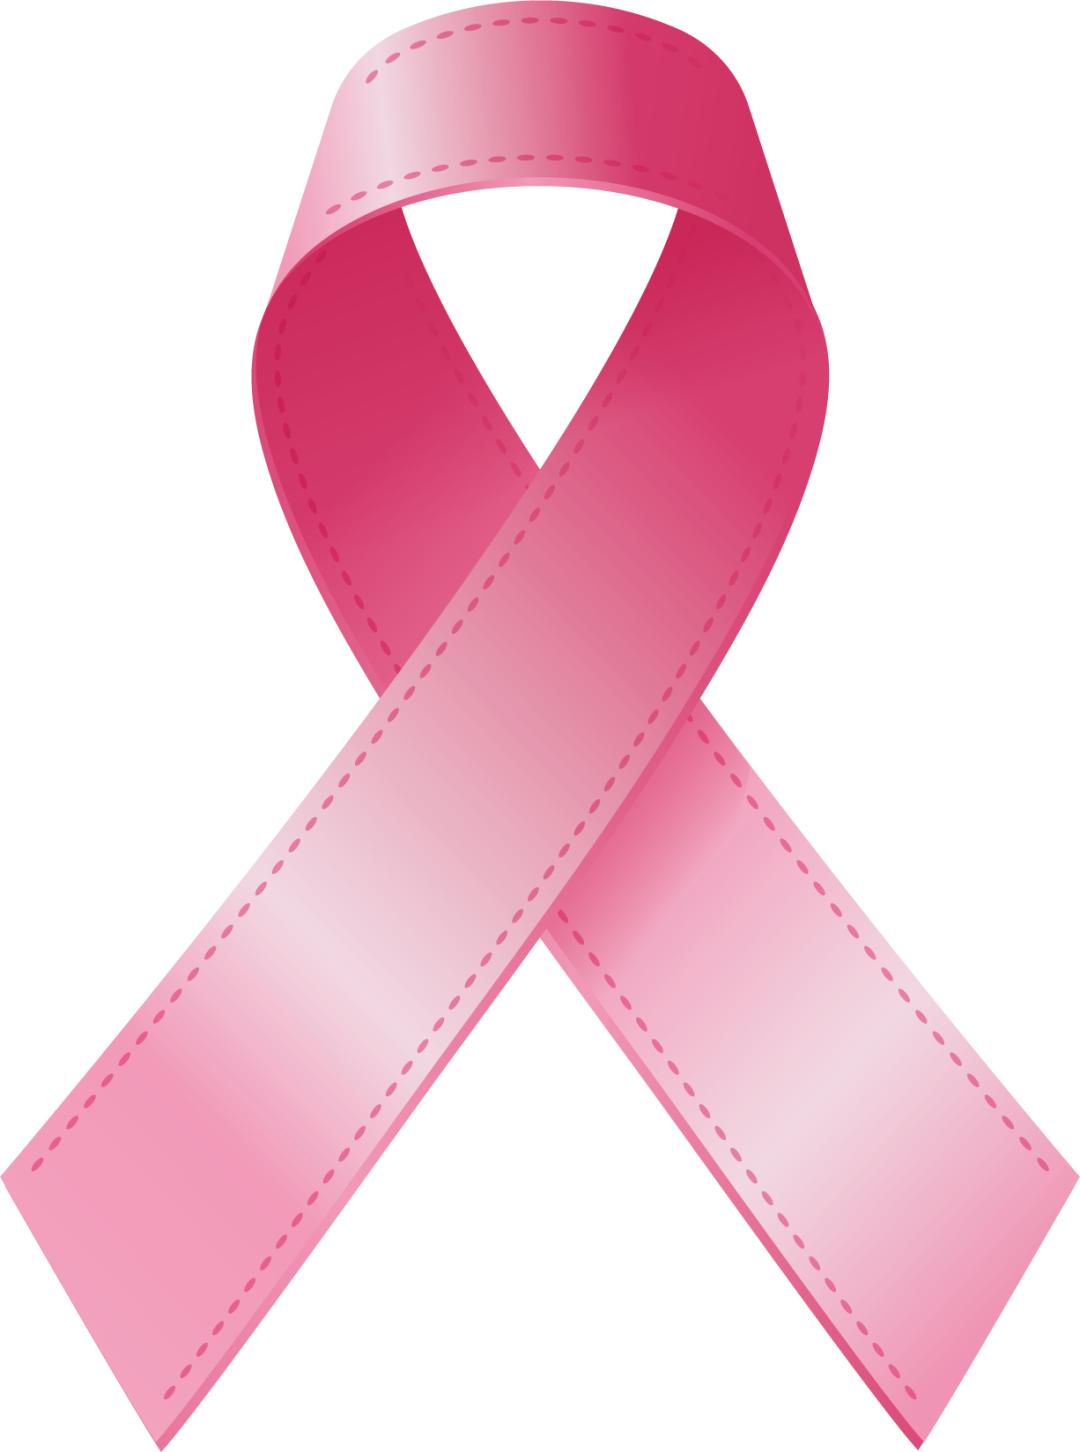 外广场2021年10月24日08:00—16:00粉红丝带是一场关爱乳房的运动